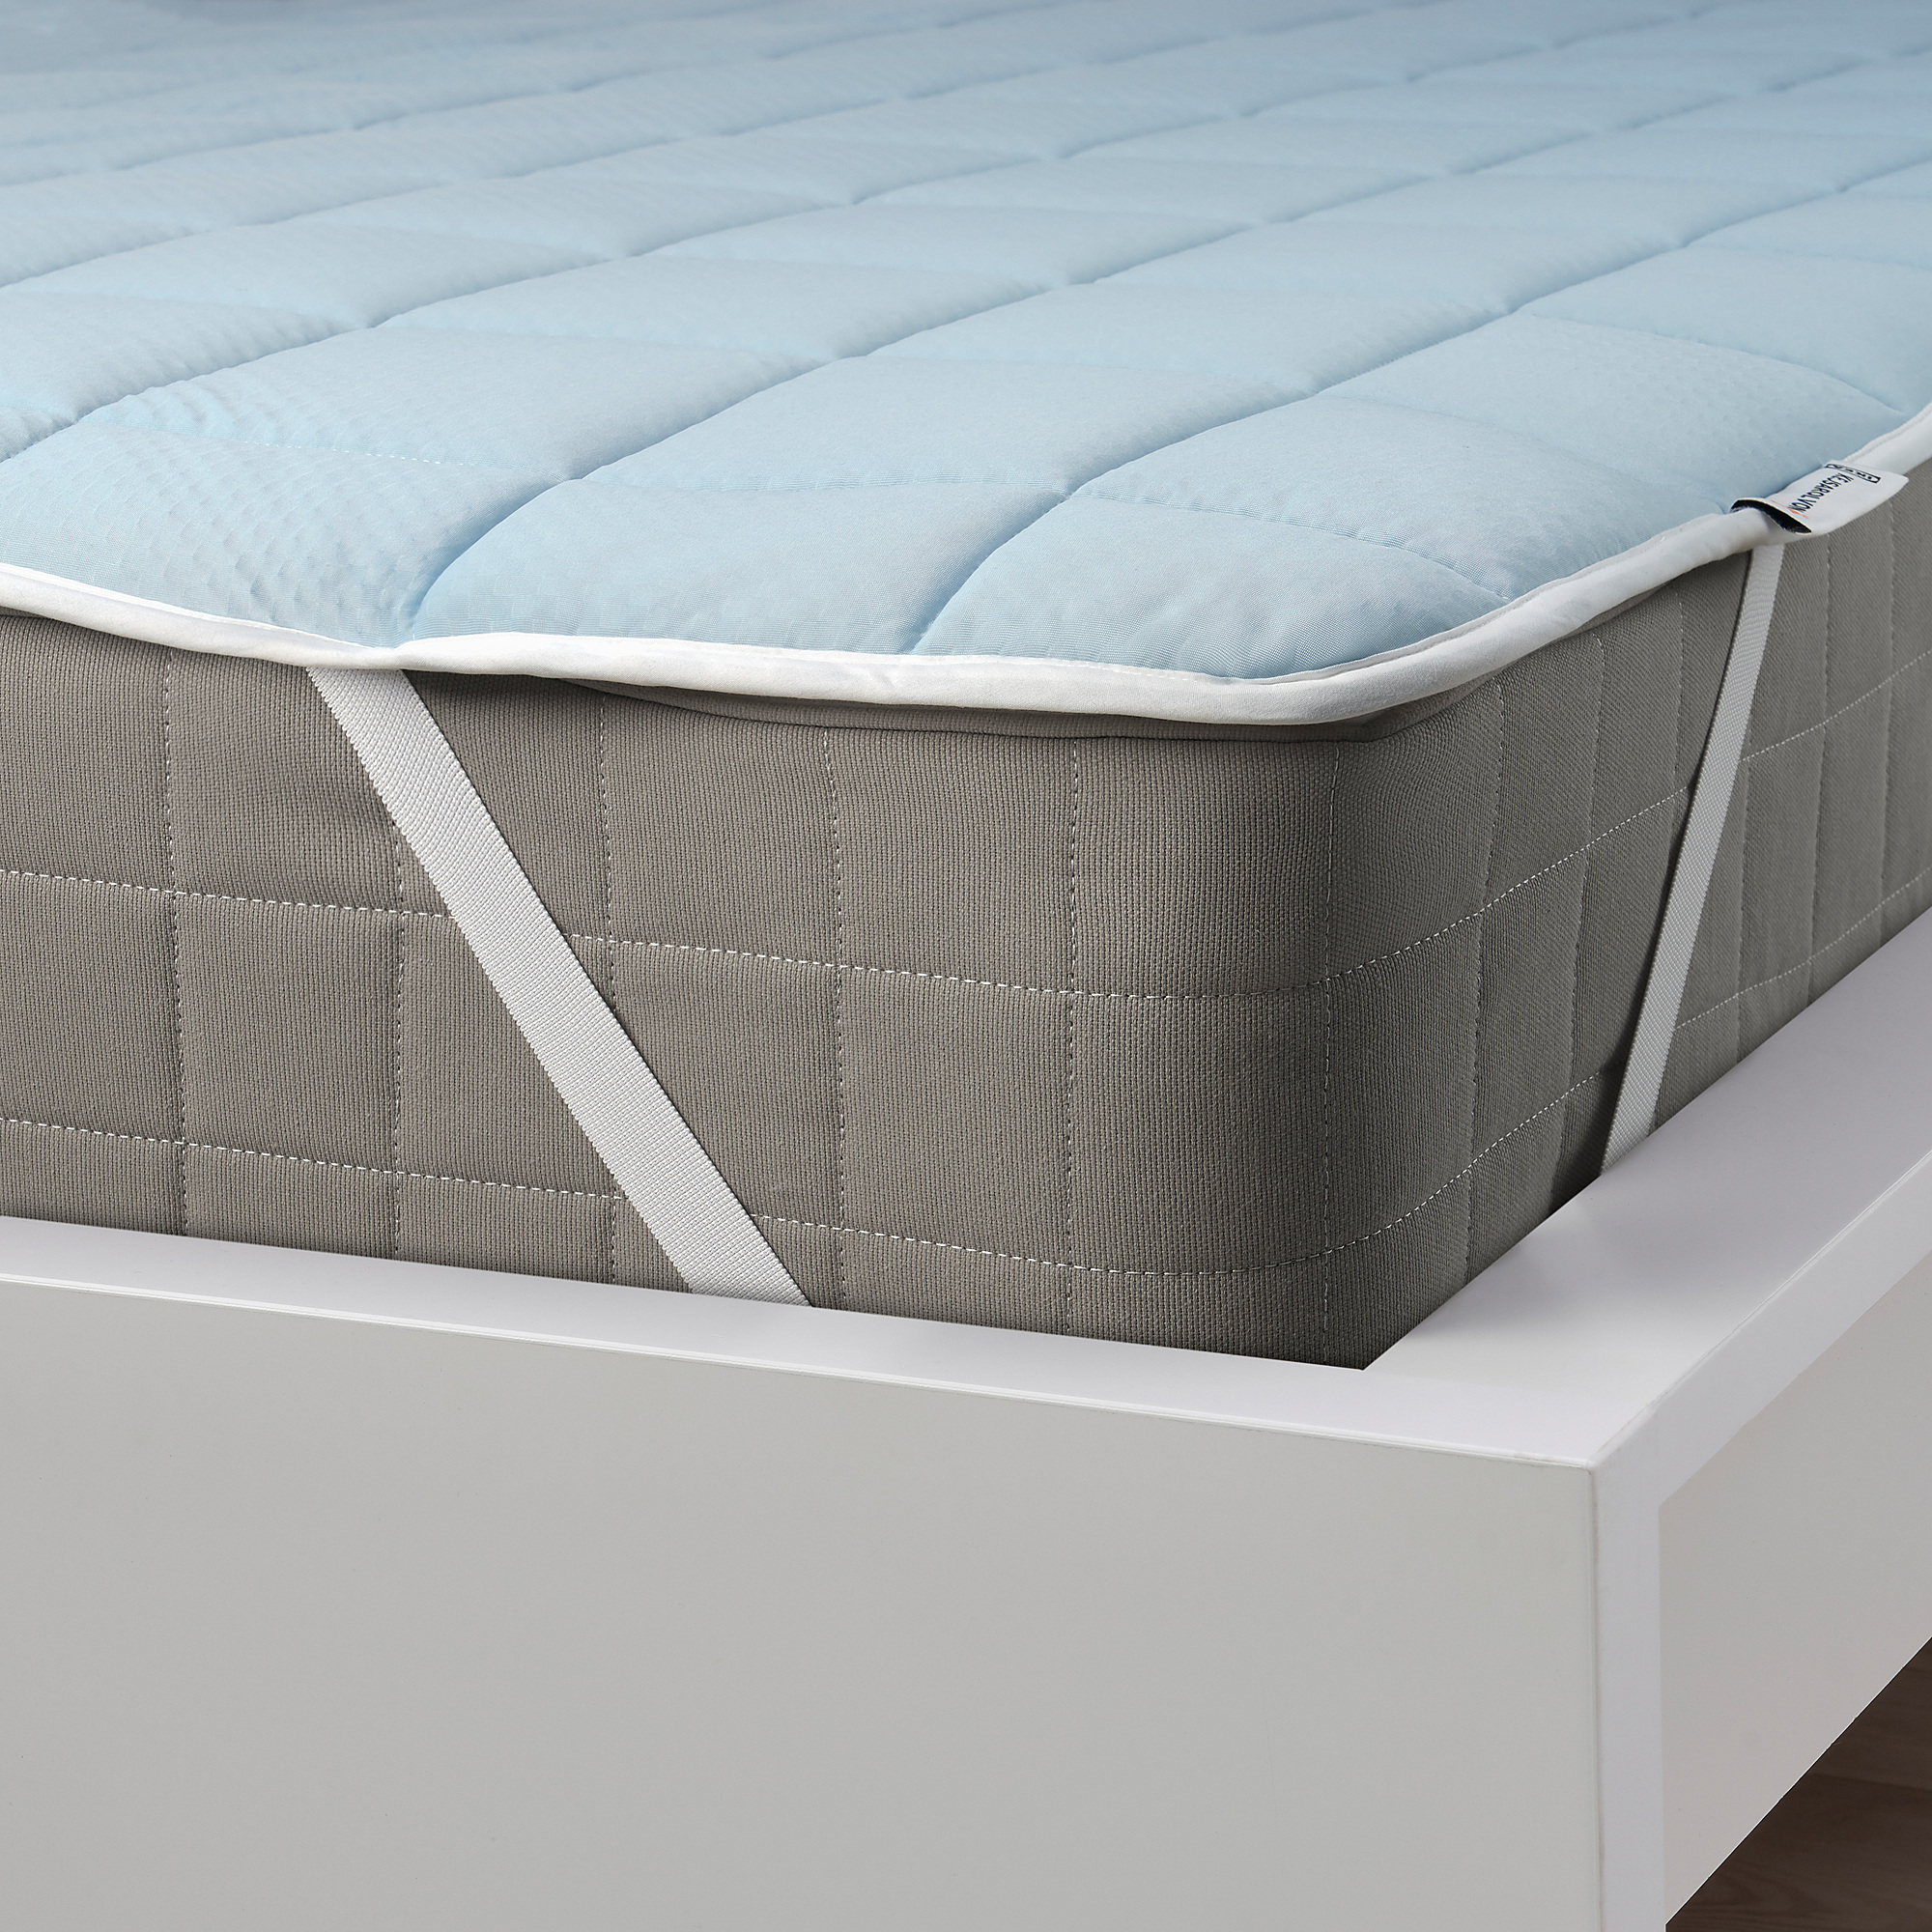 KEJSAROLVON mattress protector